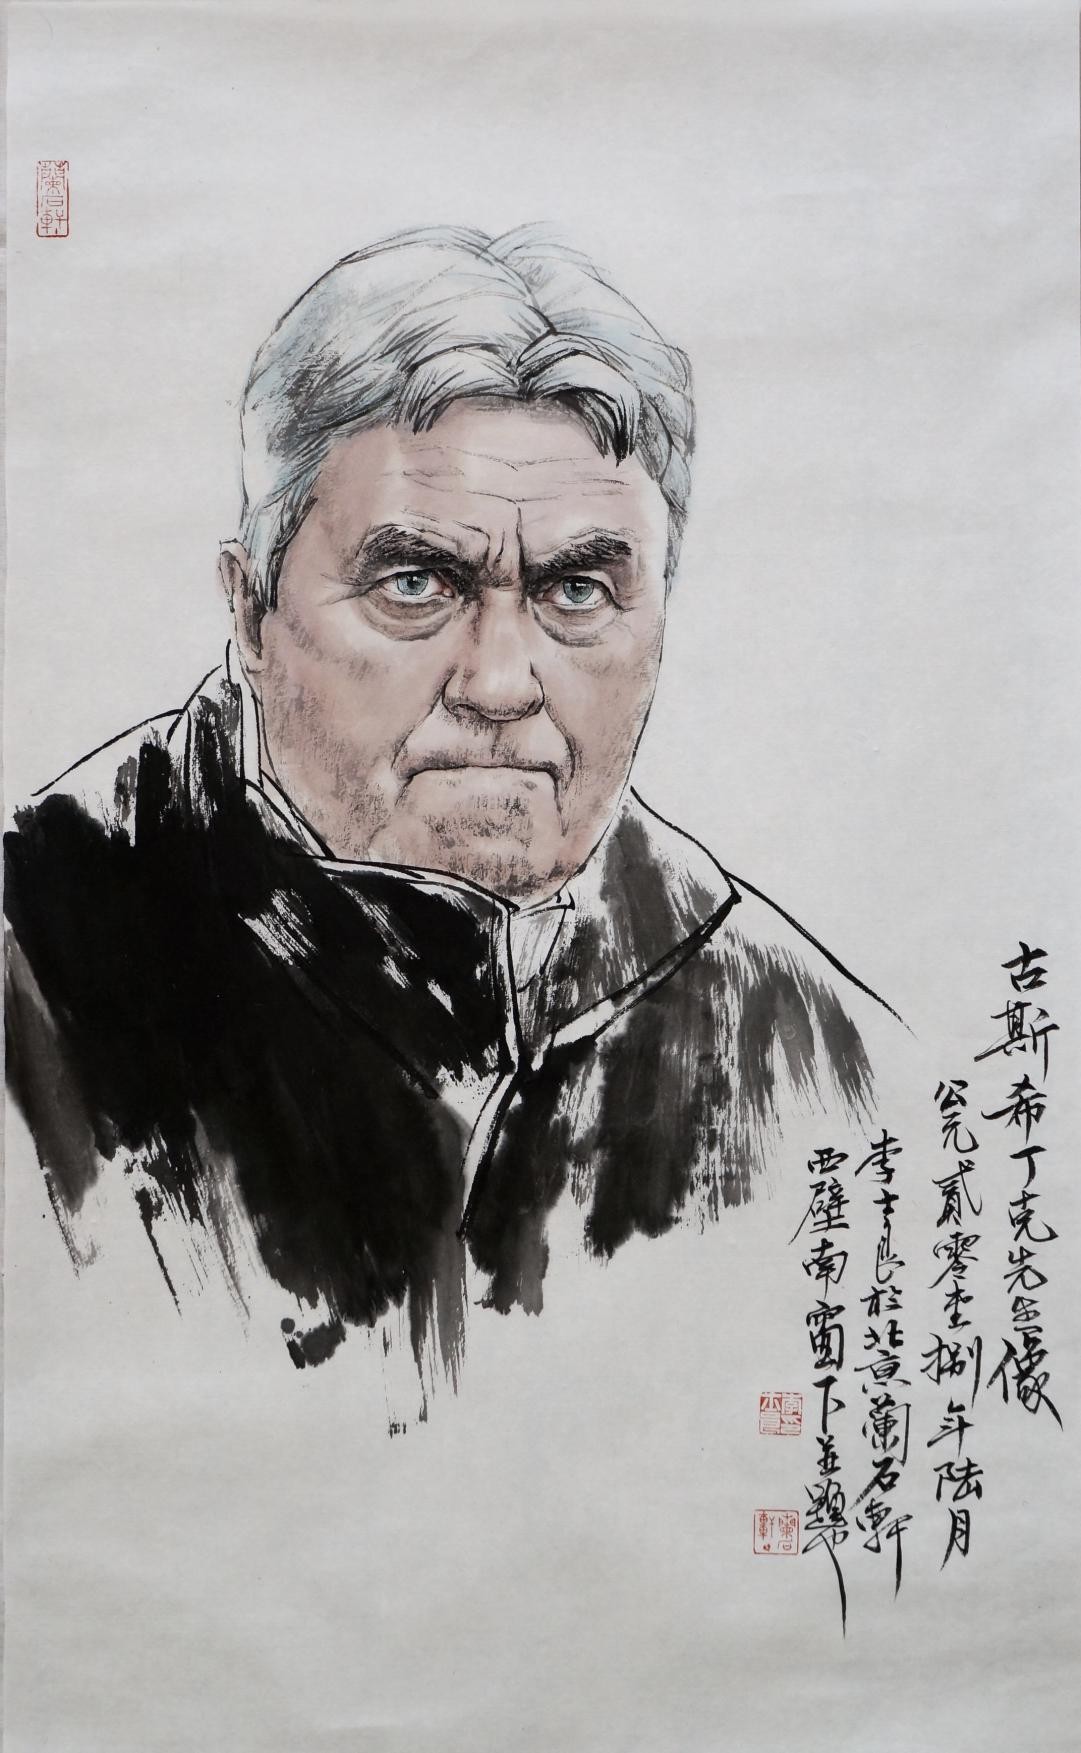 中国画家李士良水墨人物画作品走进俄罗斯双语国际期刊《中国与俄罗斯》